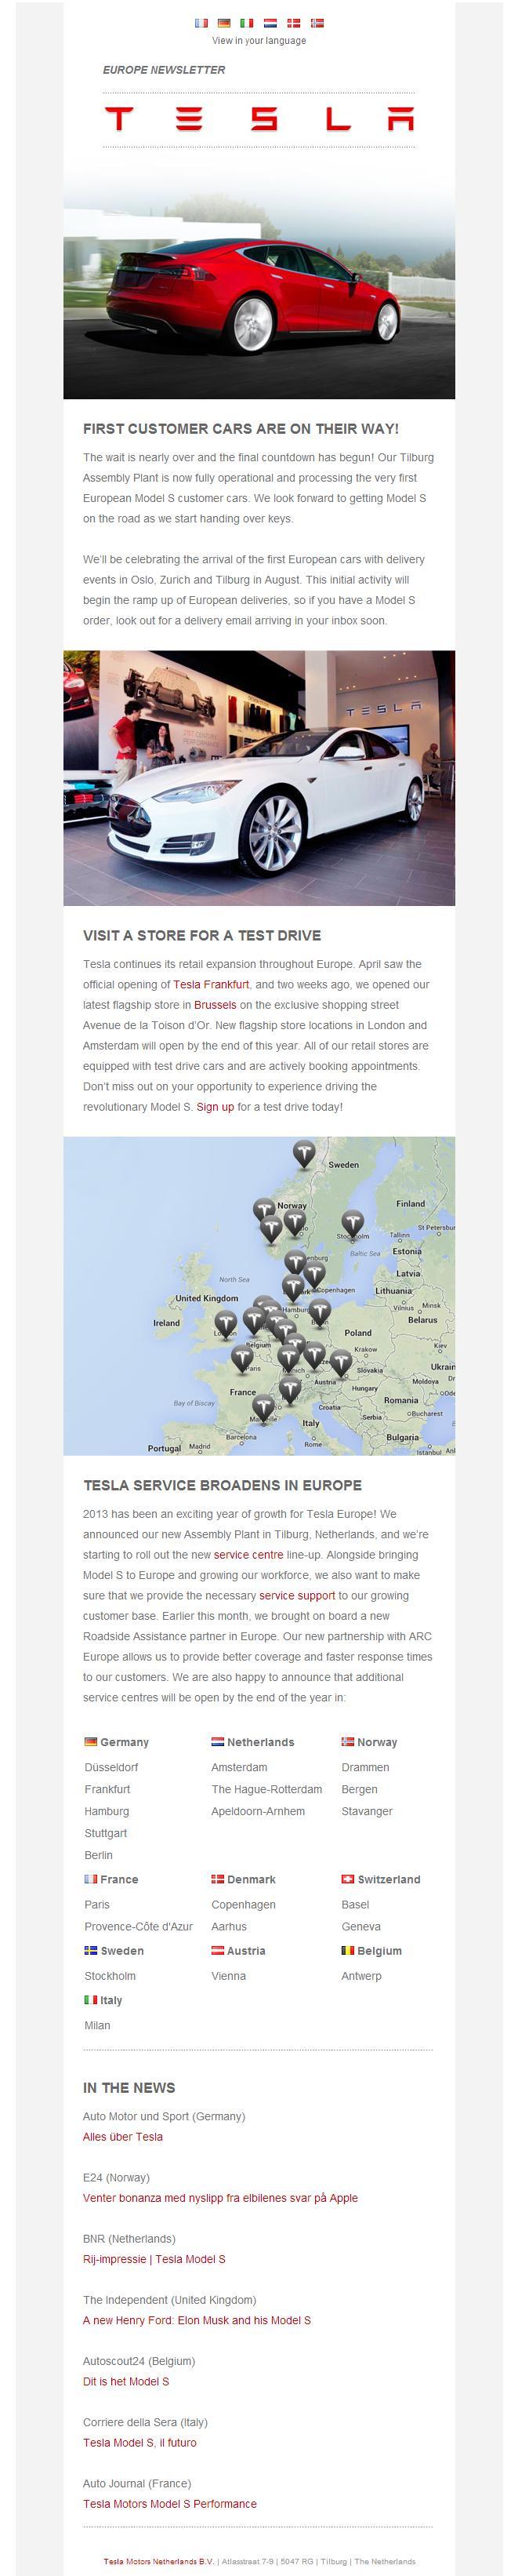 Tesla - Europe Newsletter.jpg